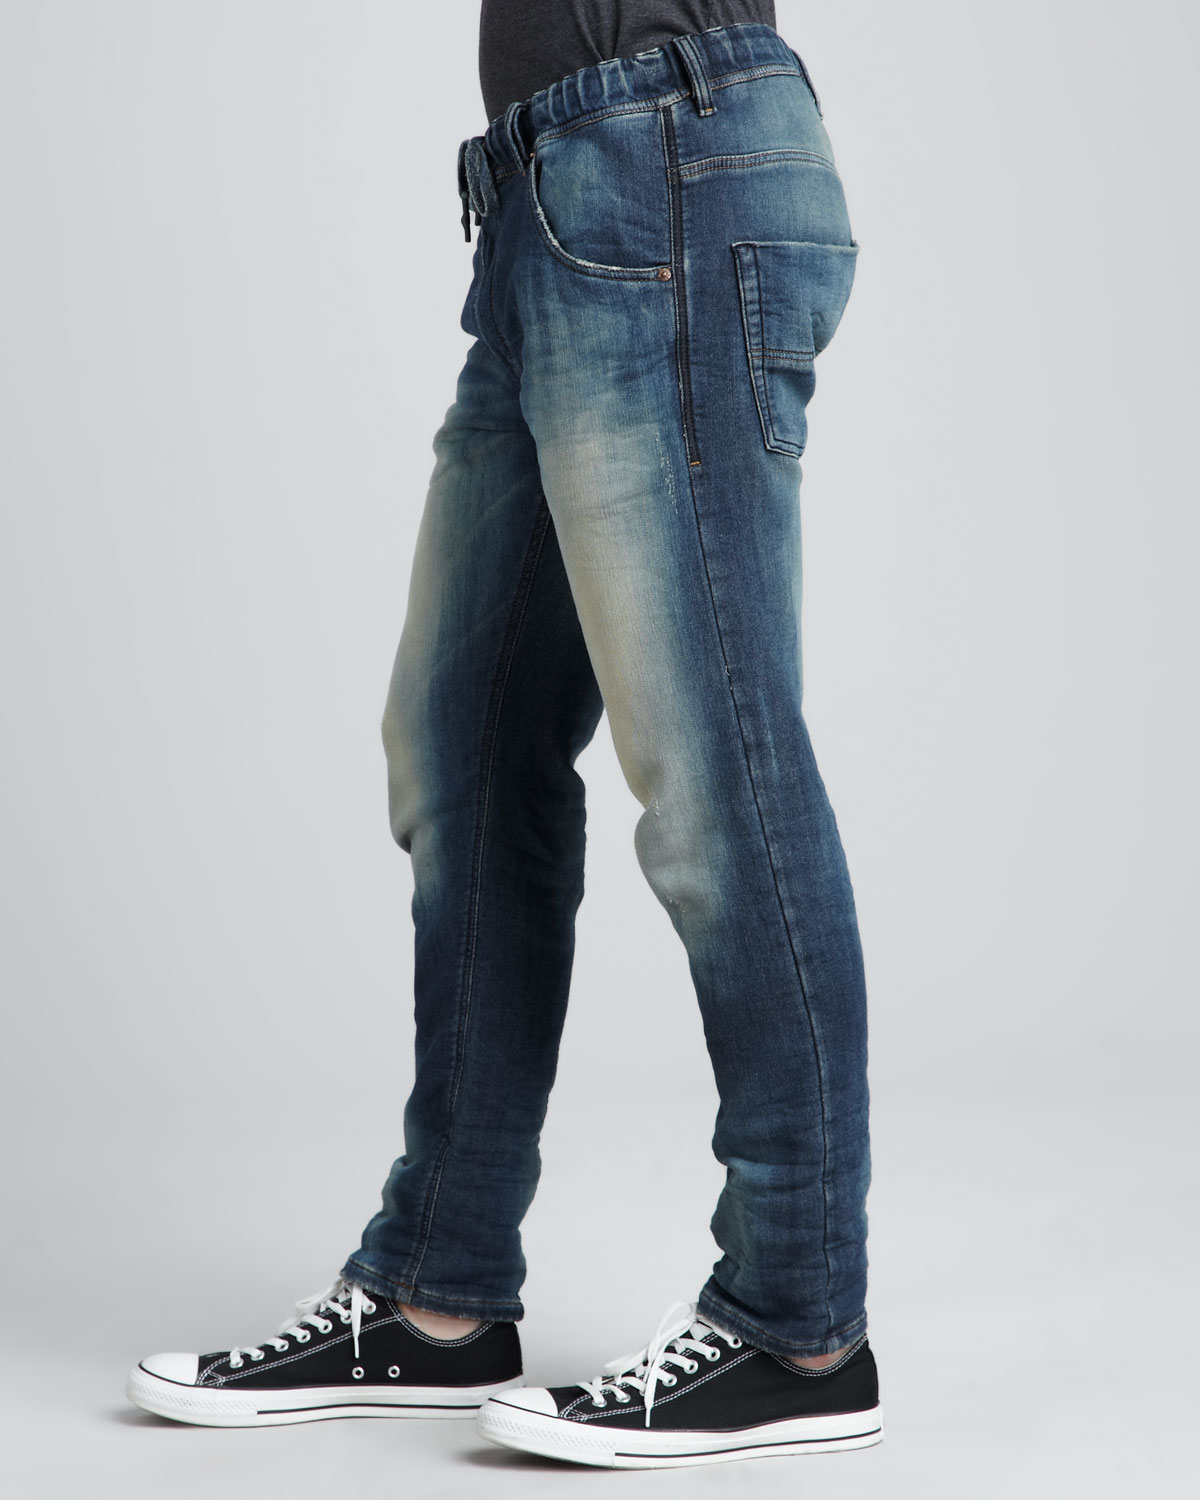 Lyst - Diesel Krooley Jogg Jeans in Blue for Men